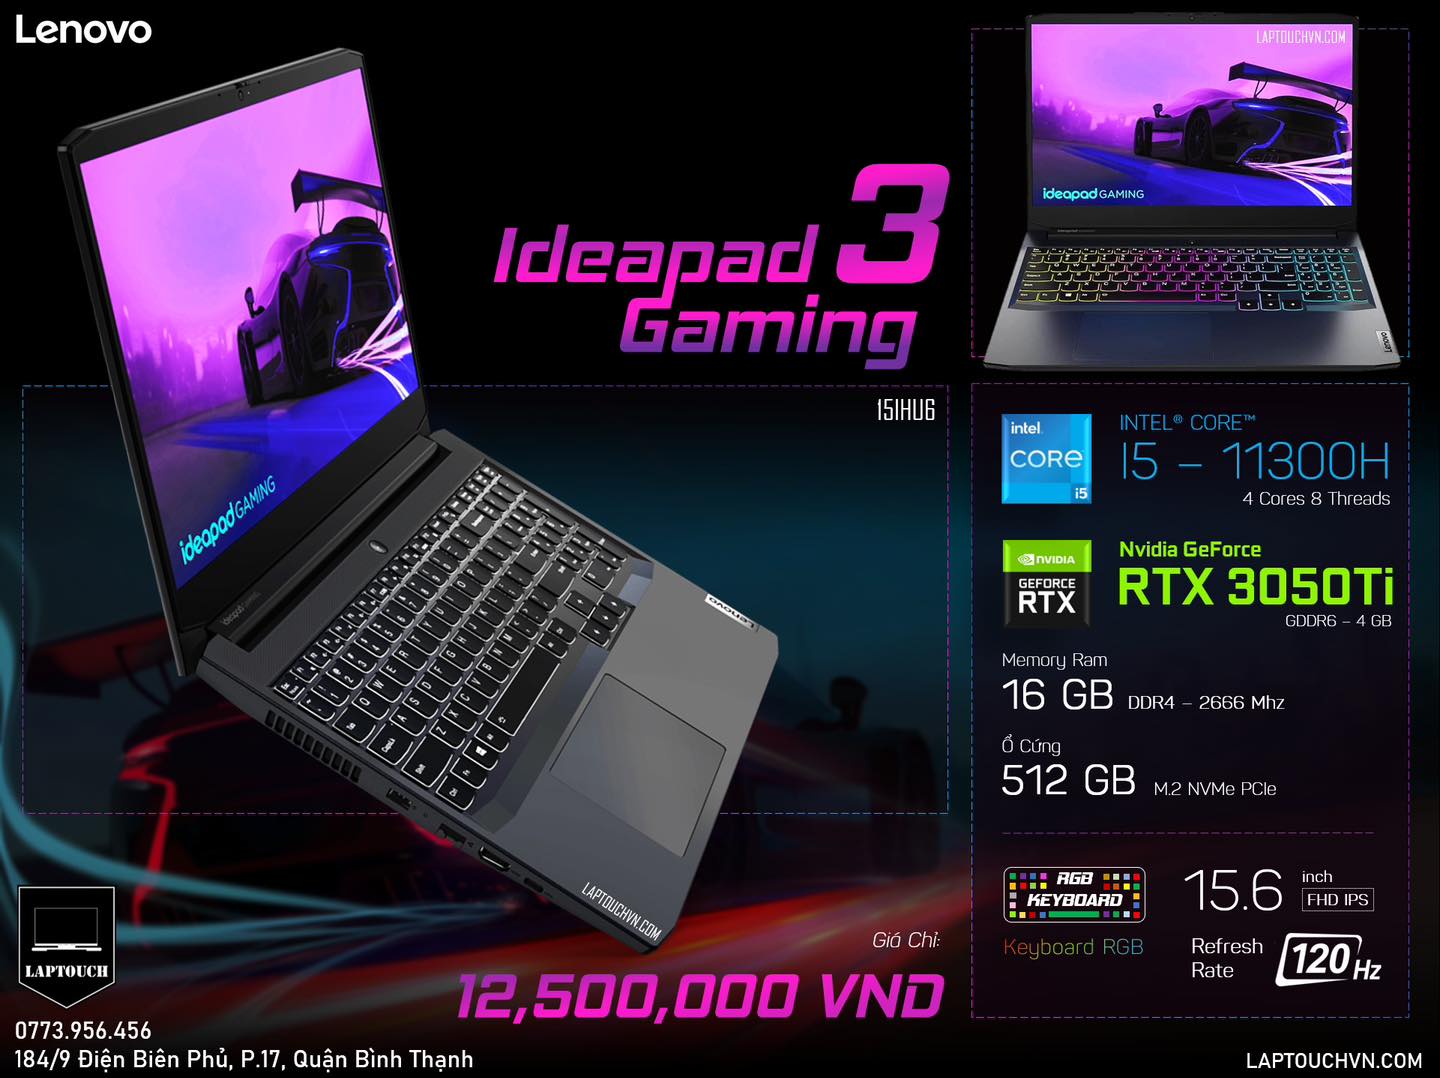 Lenovo Idepad Gaming 3 [ RTX 3050Ti - 4 GB ]